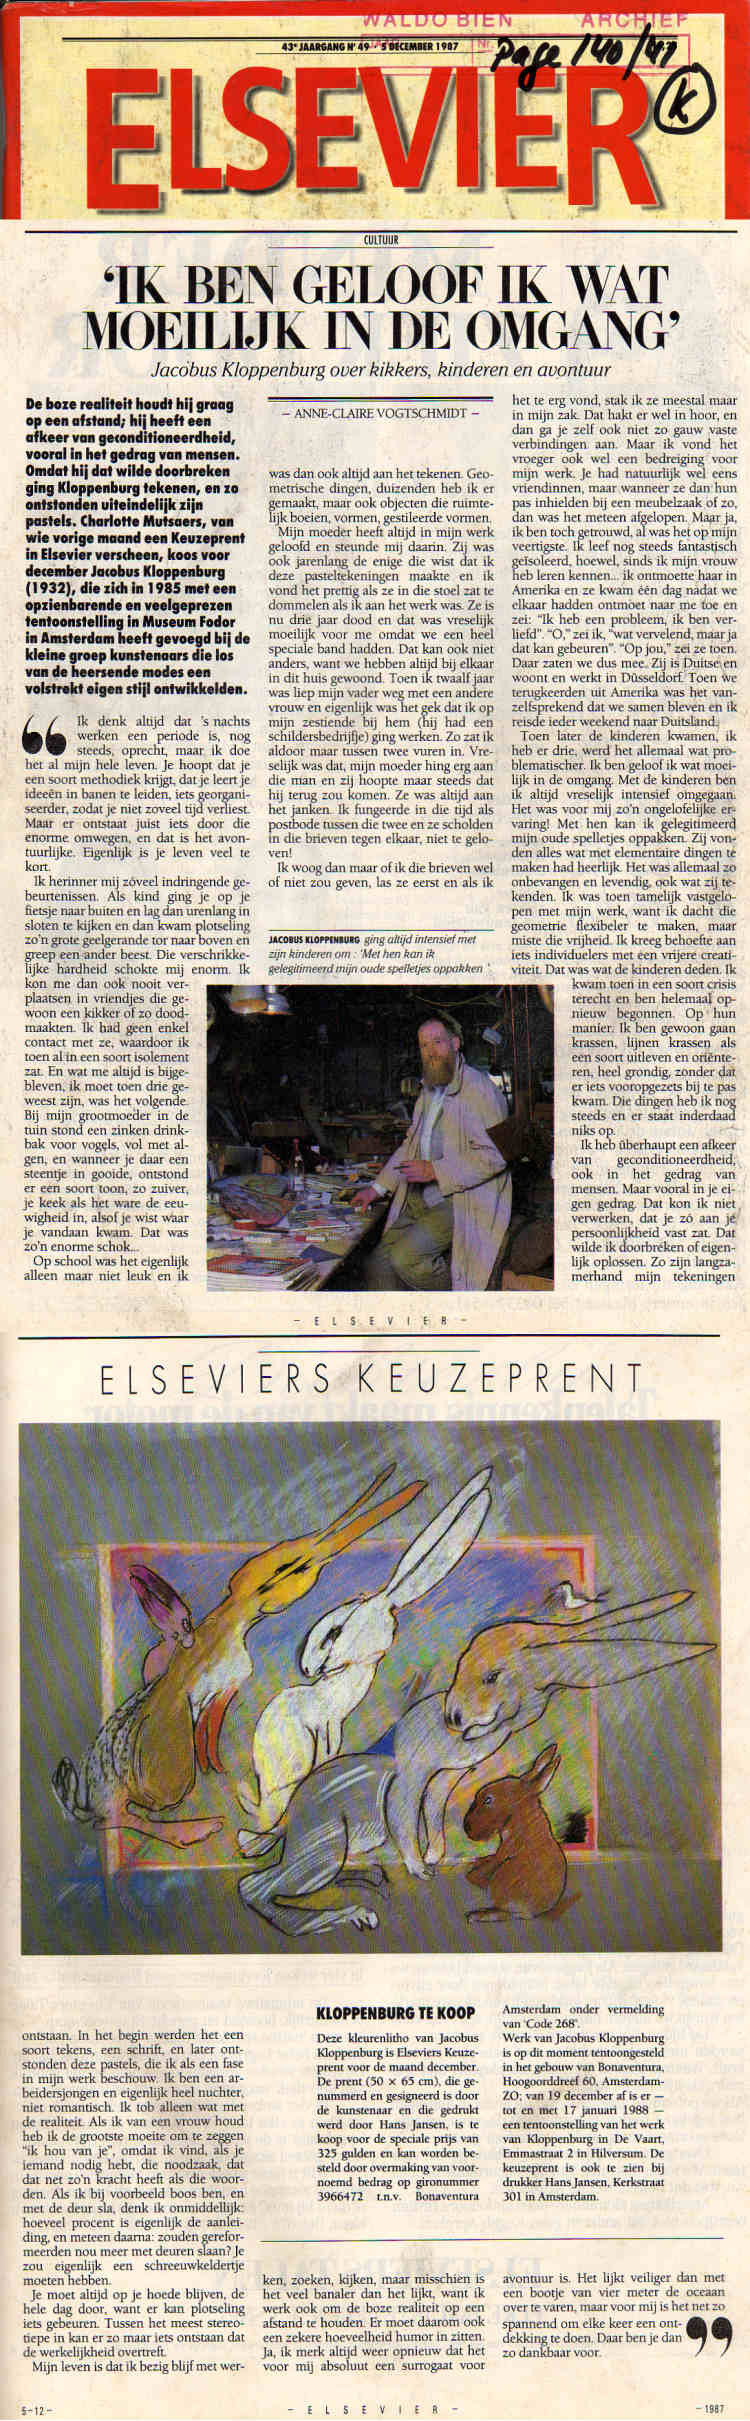 1987 - 5 December - Elsevier